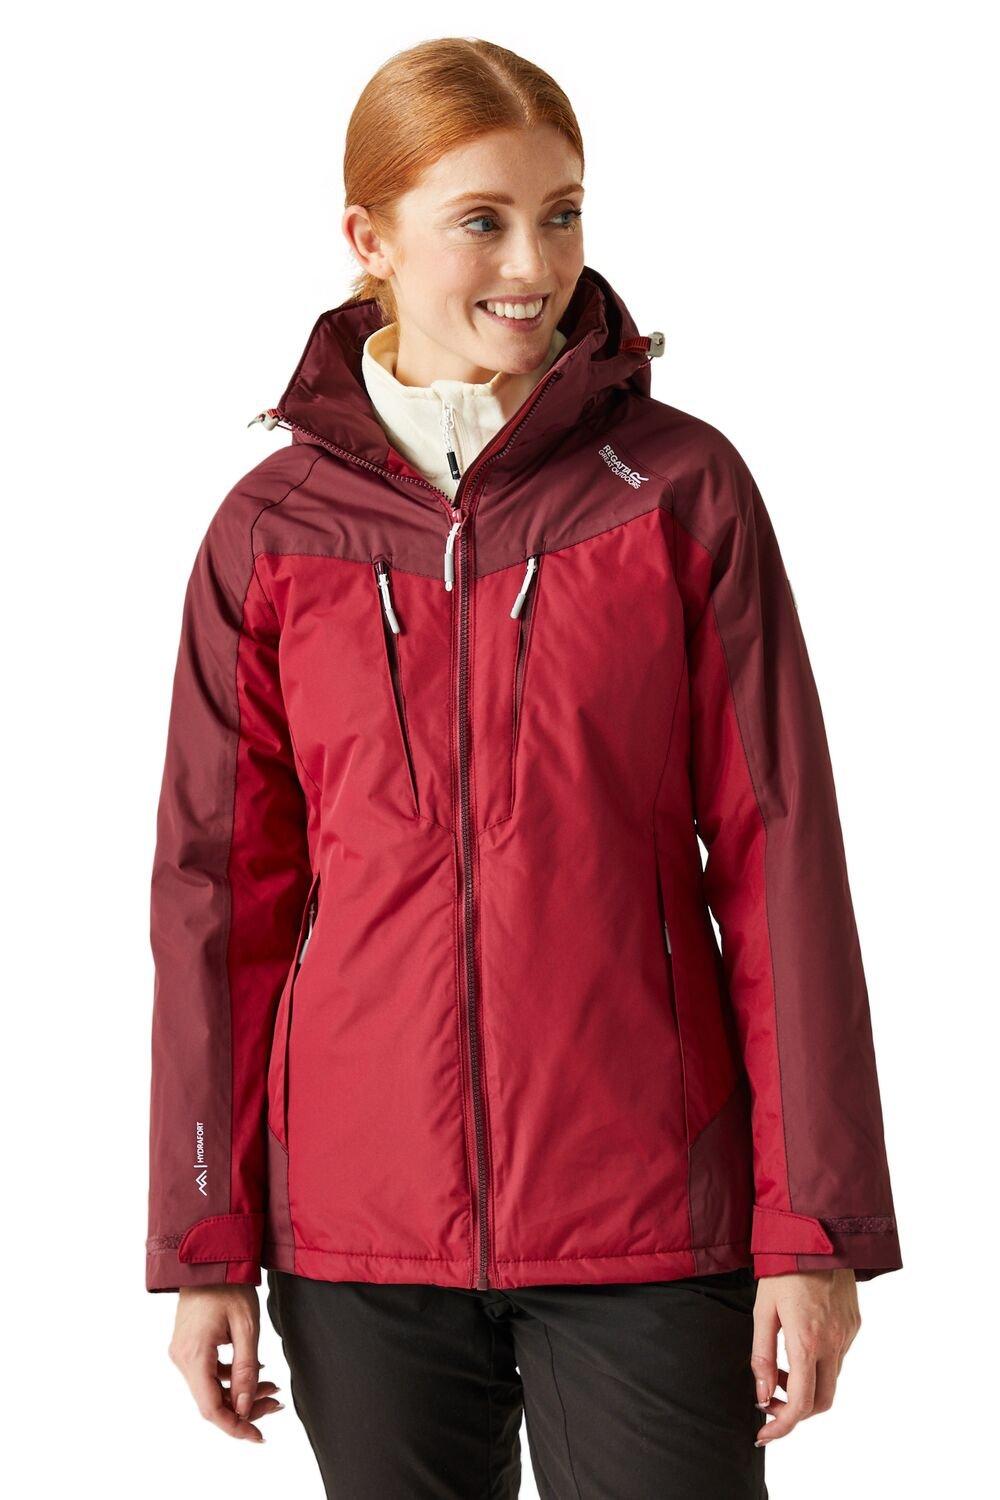 Зимняя водонепроницаемая куртка Calderdale Regatta, красный